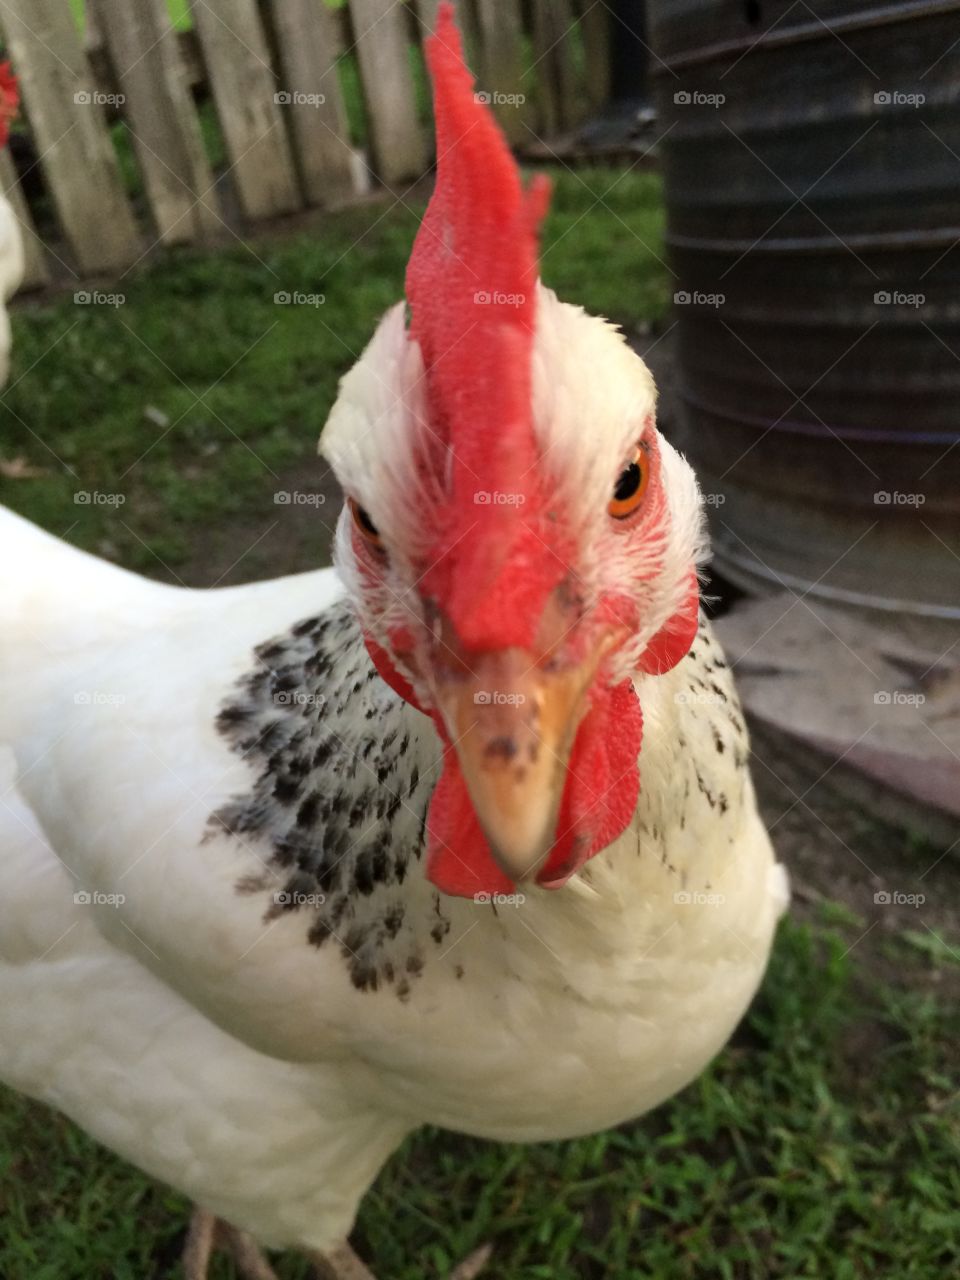 Chicken selfie